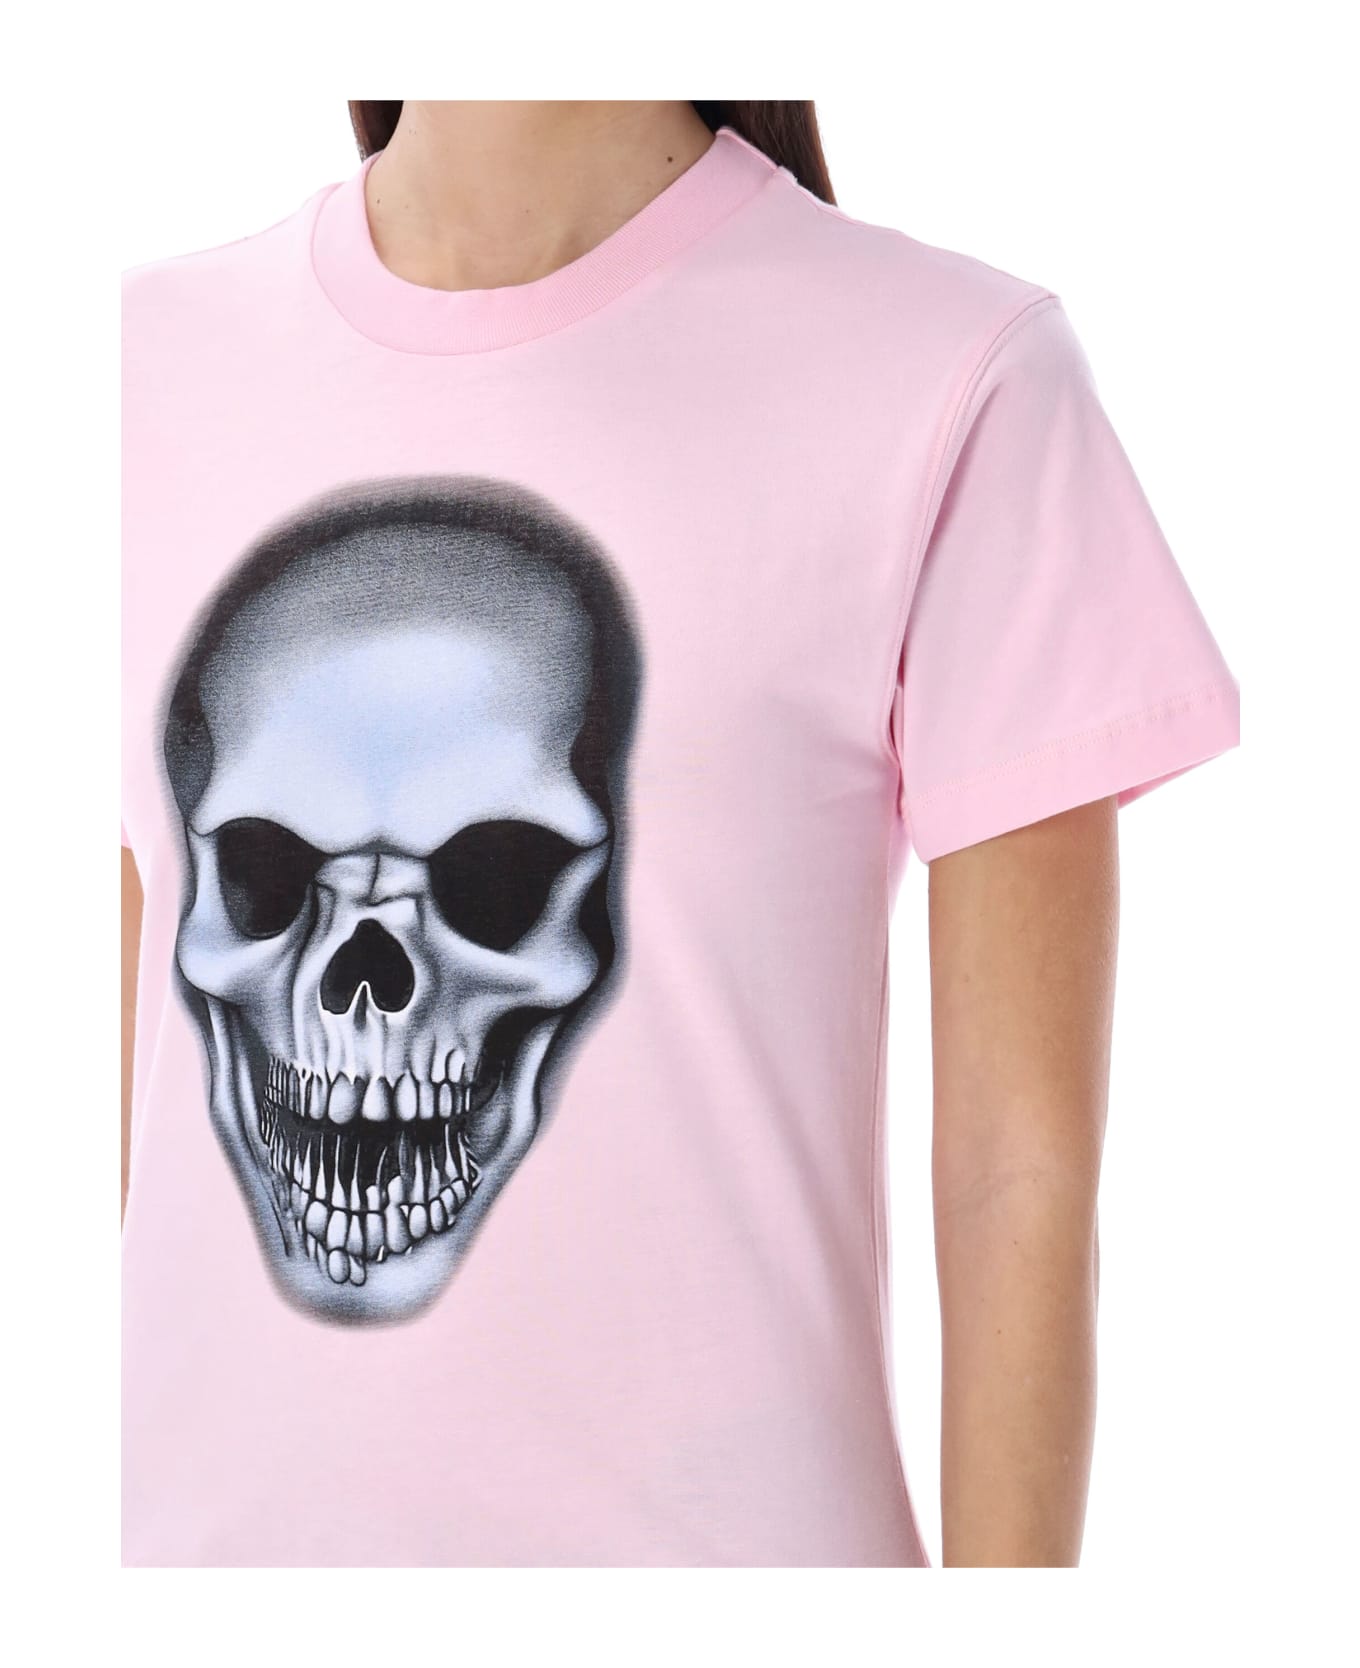 Ottolinger Skull T-shirt - LIGHT PINK